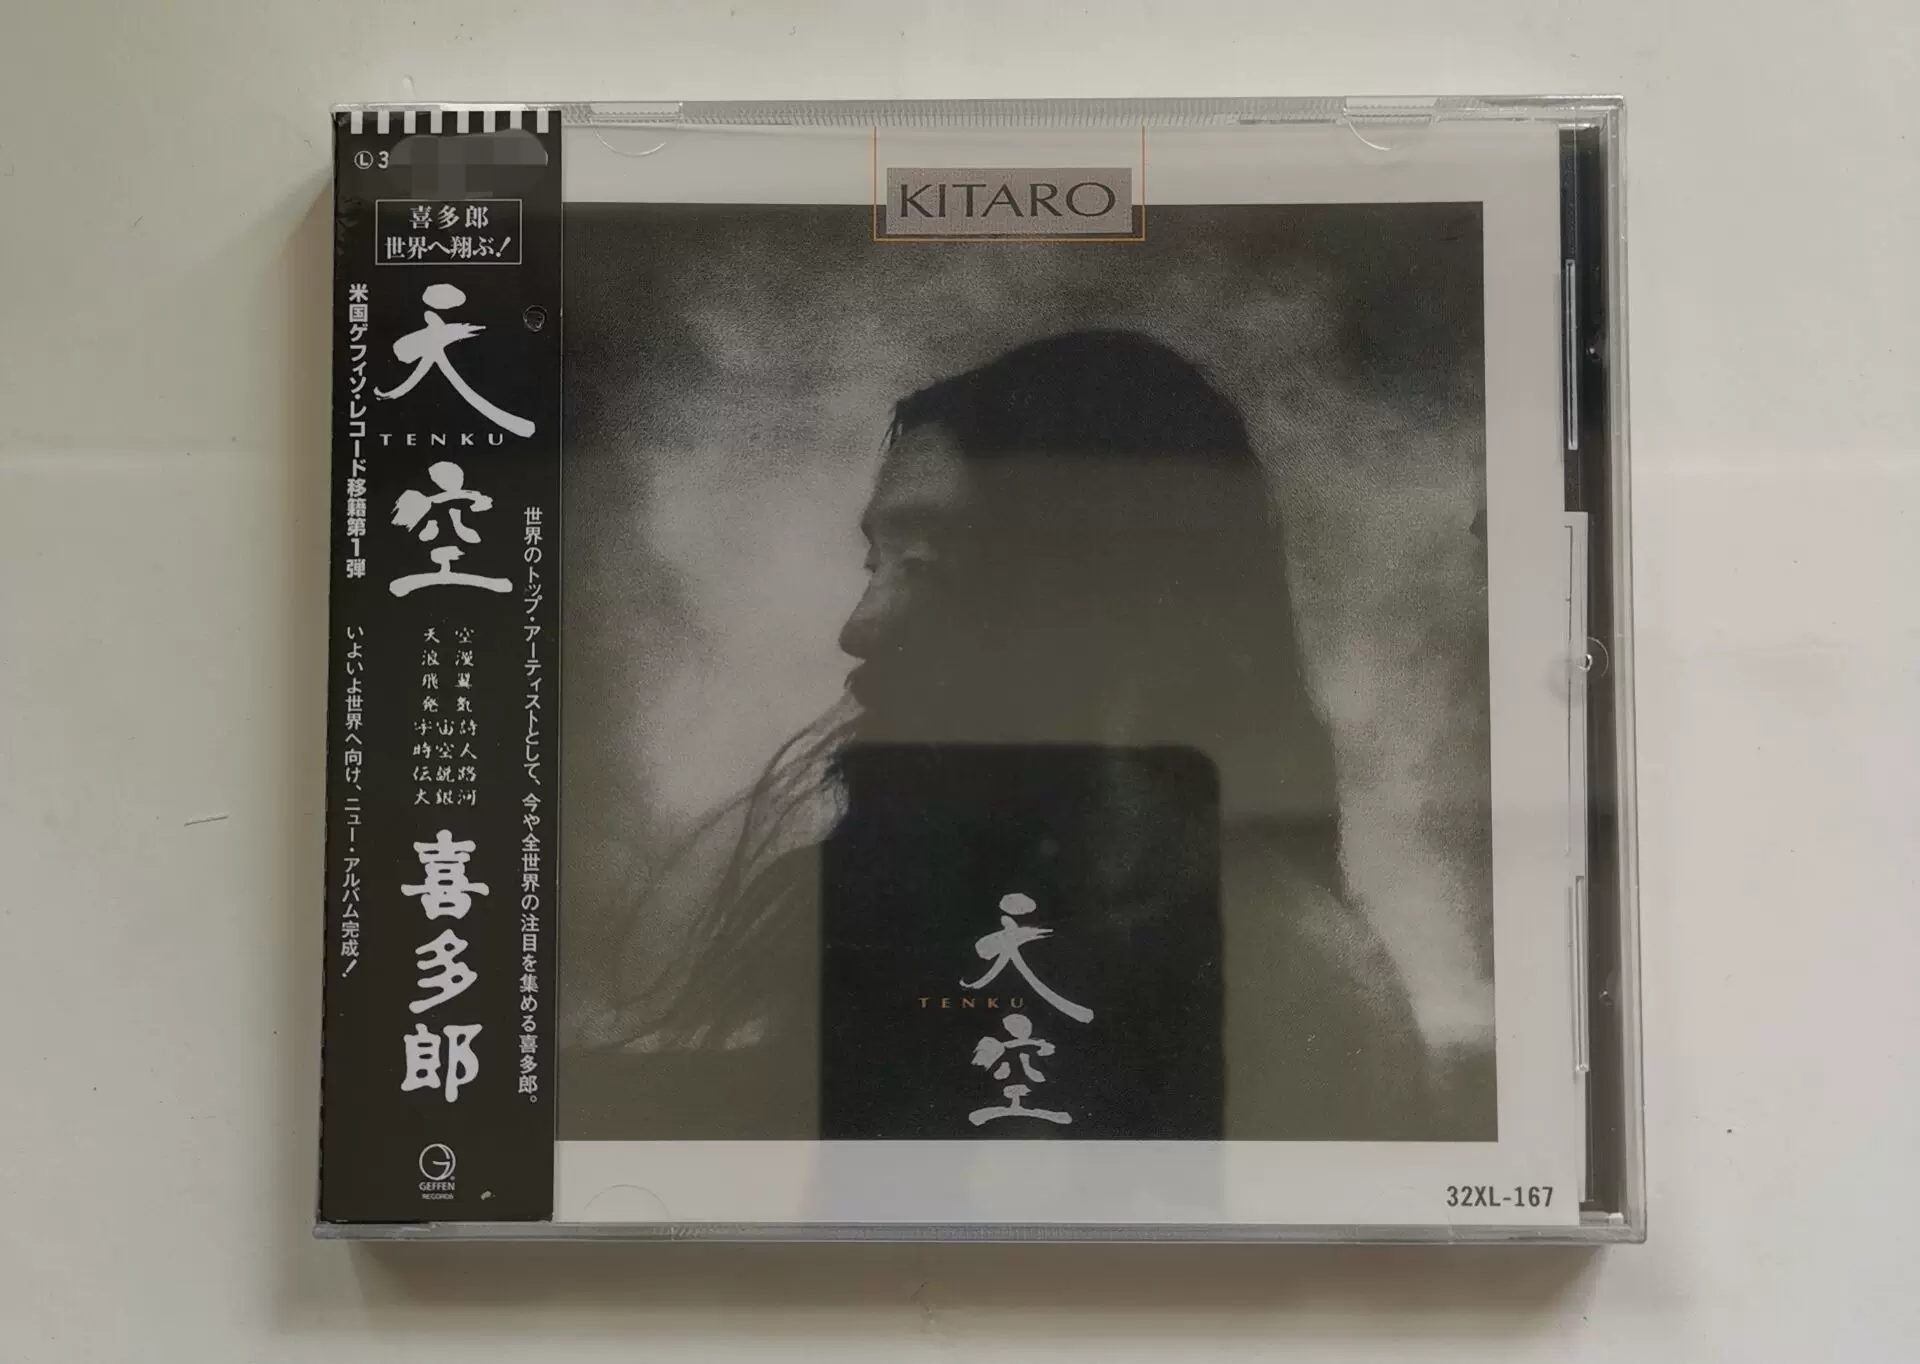 發燒天碟喜多郎天空KITARO/TENKU CD 現貨-Taobao